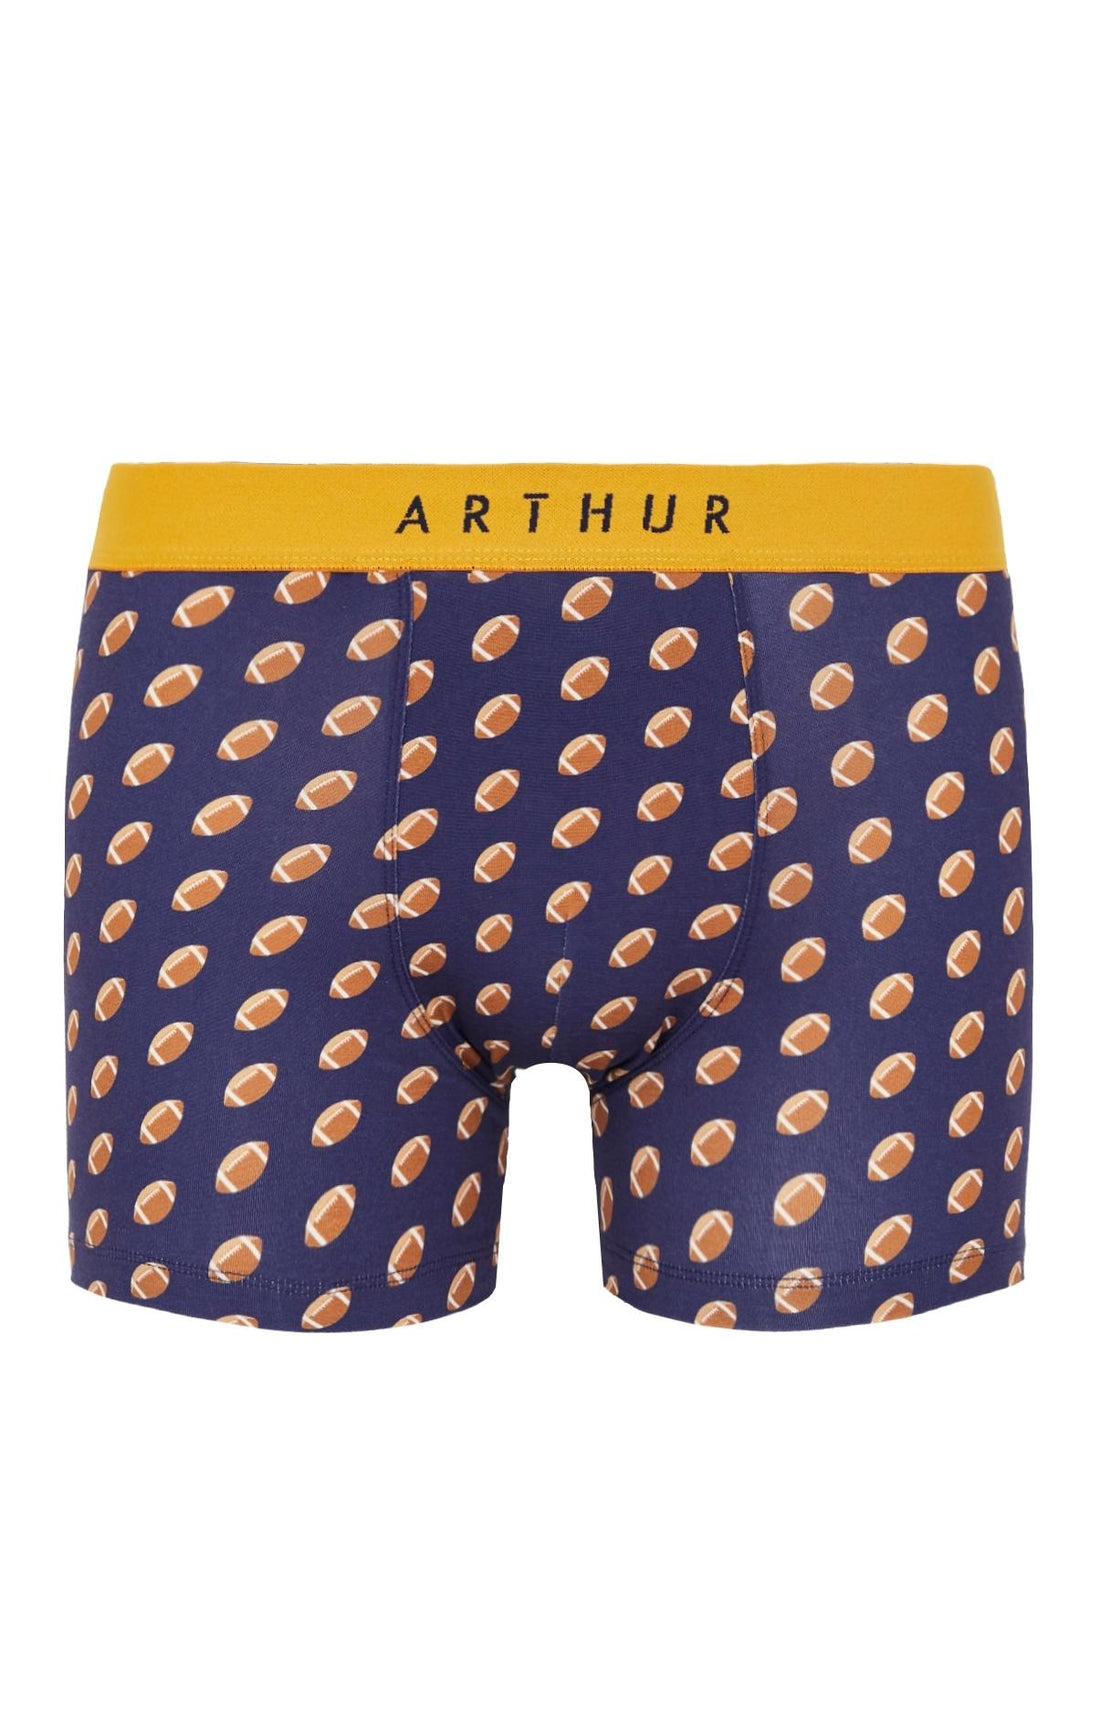 Boxer Marine | Sous-vêtements homme – Arthur